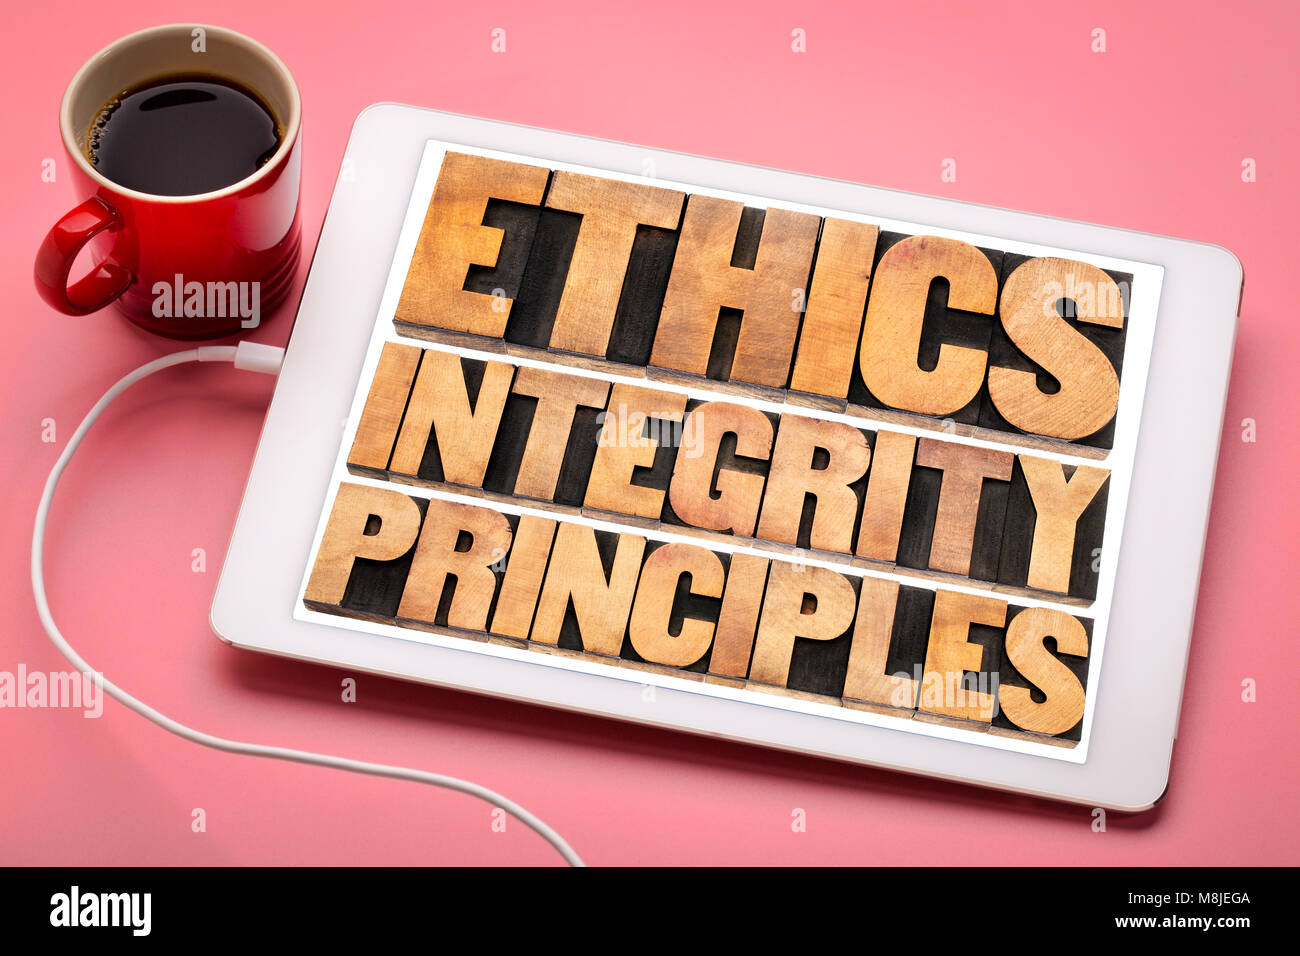 Etica e integrità e di principi astratti di parola - concetto etico su una tavoletta digitale con una tazza di caffè Foto Stock